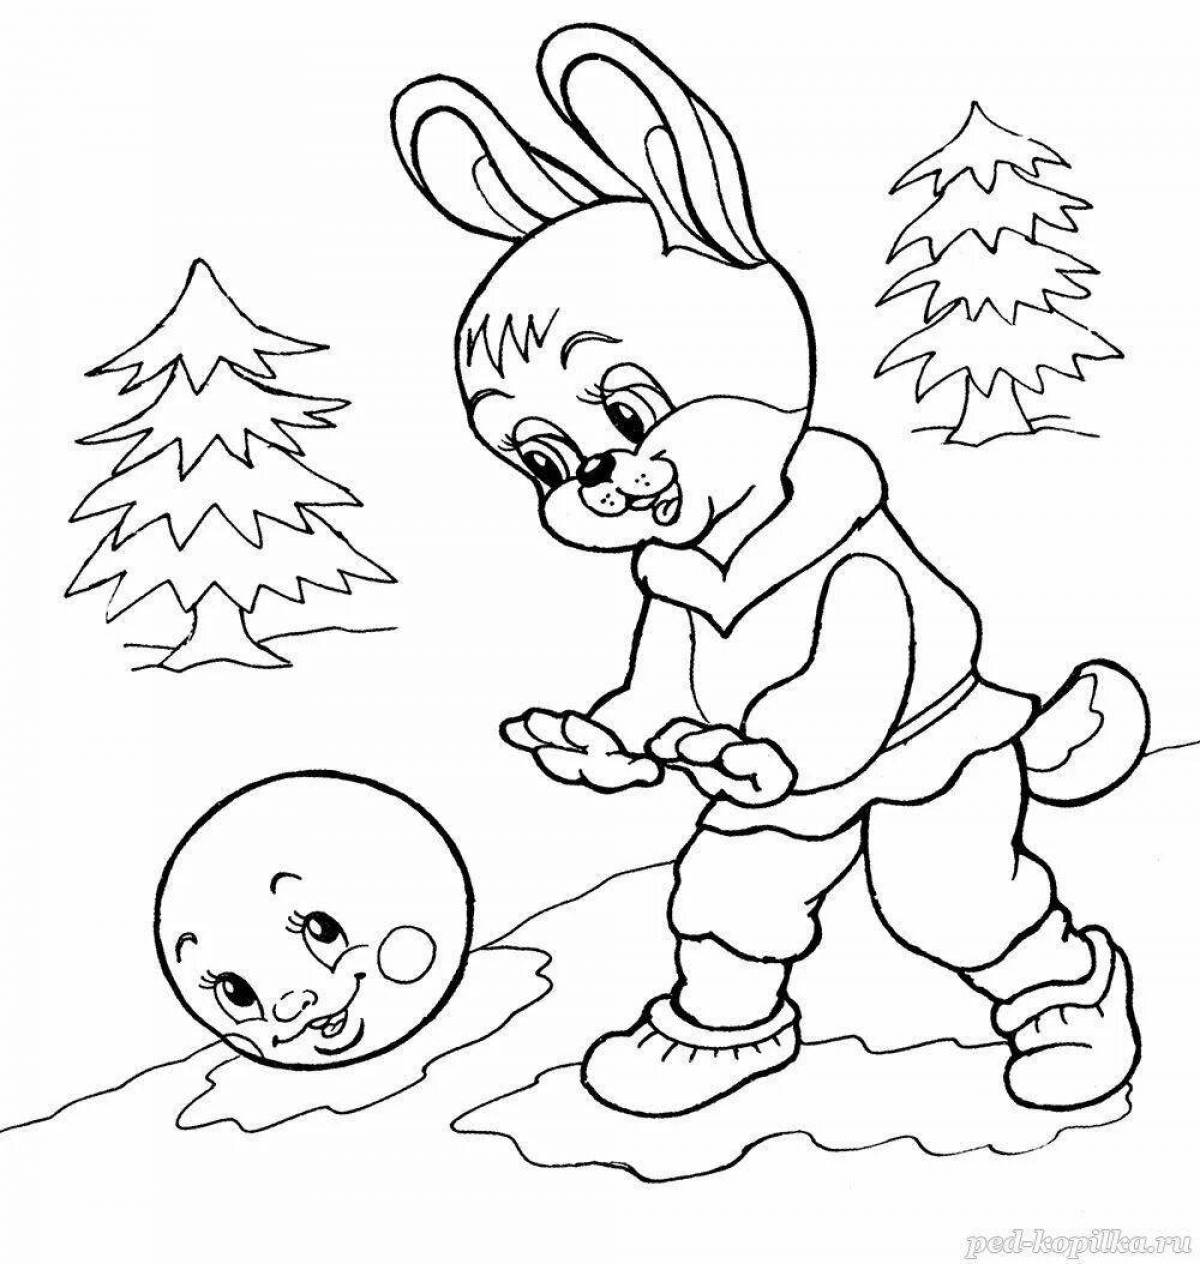 Coloring book joyful bun for children 4-5 years old